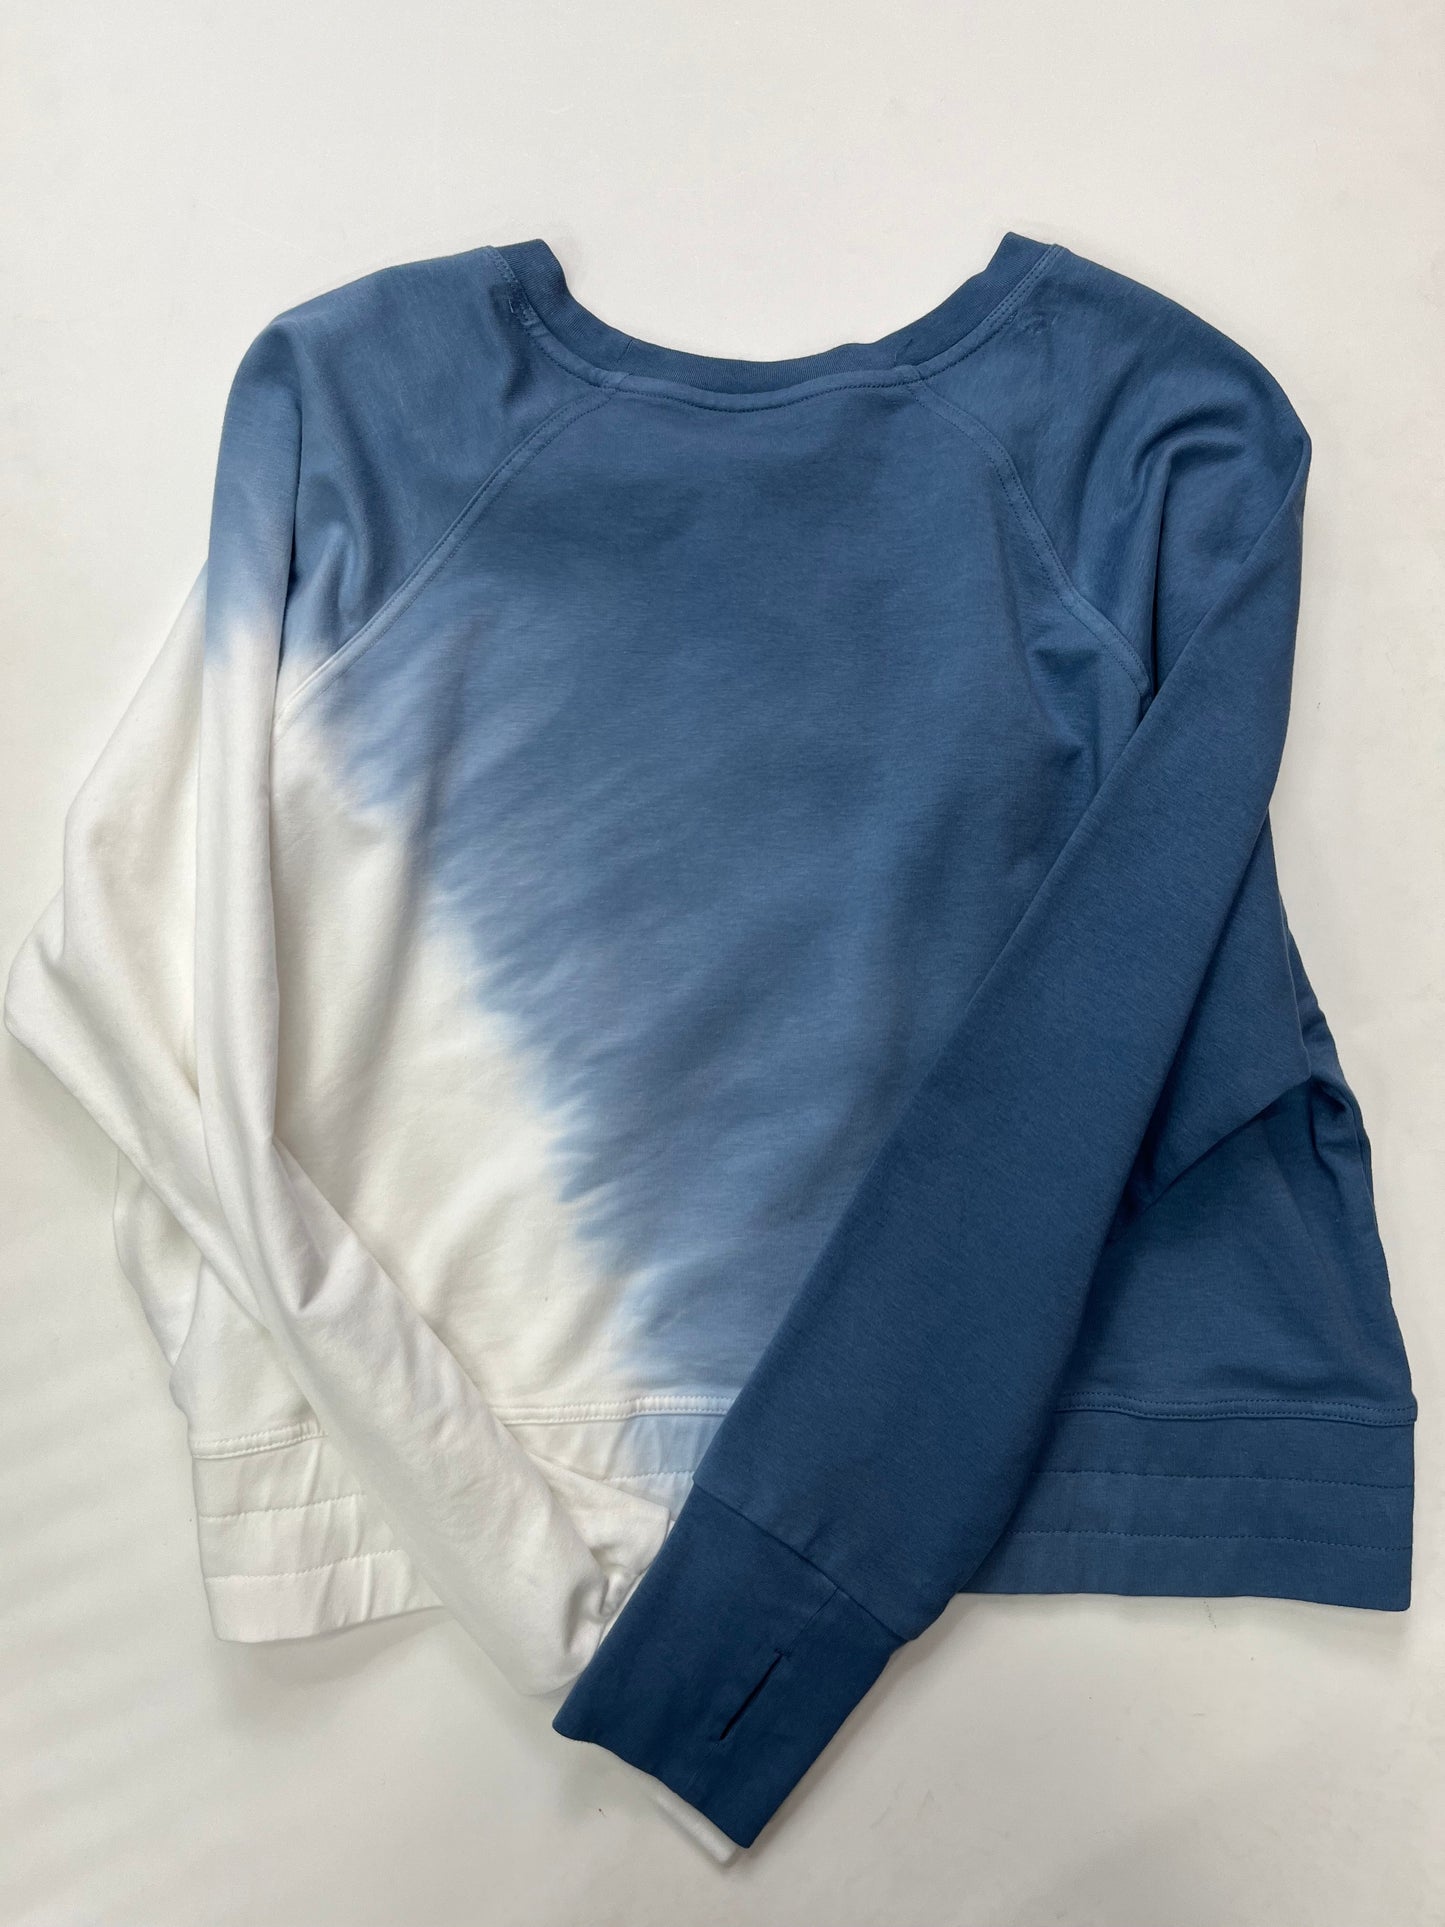 Sweatshirt Crewneck By Joy Lab NWT Size: Xl